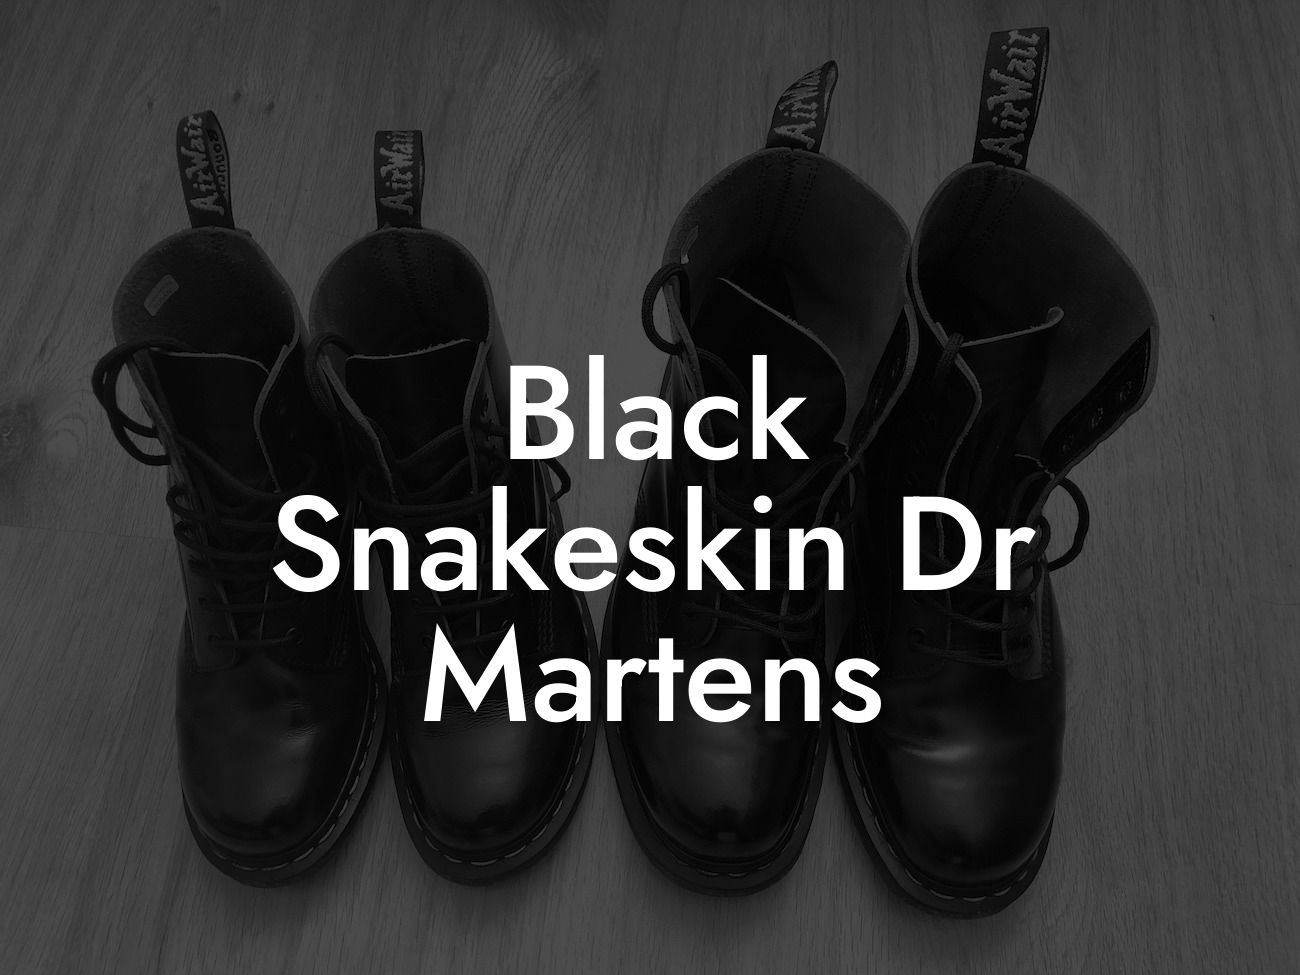 Black Snakeskin Dr Martens